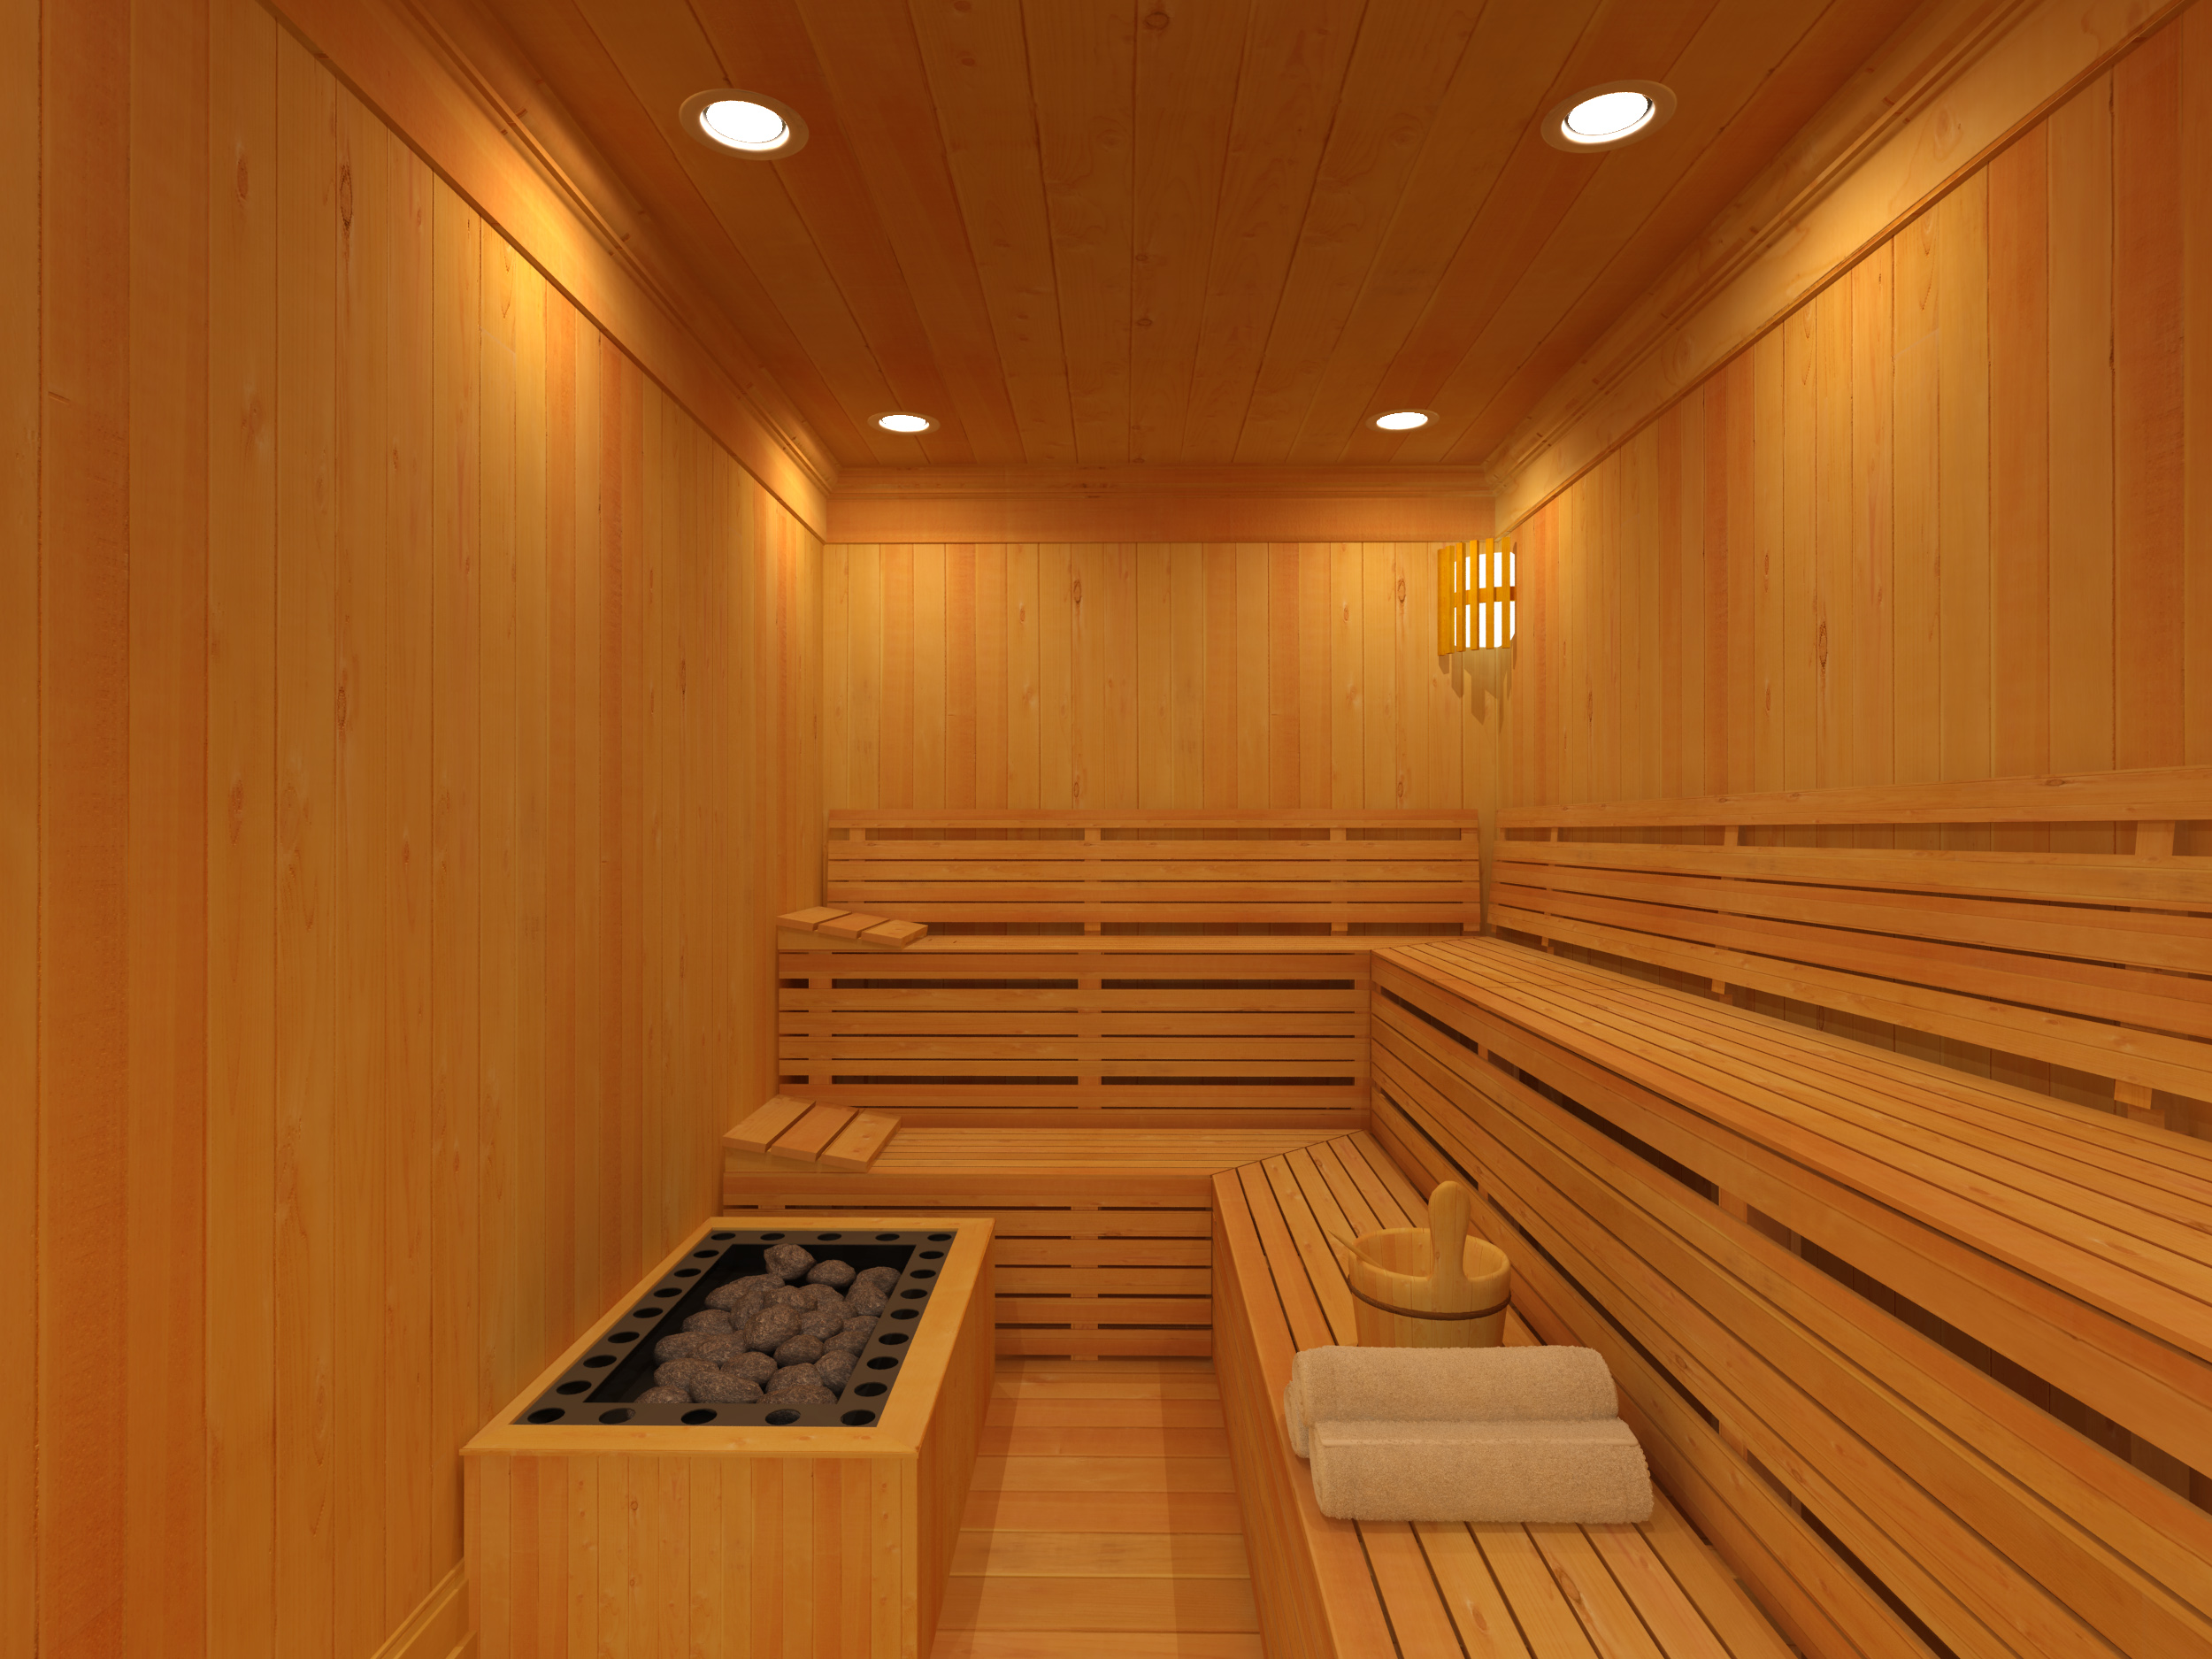 Benefícios da sauna